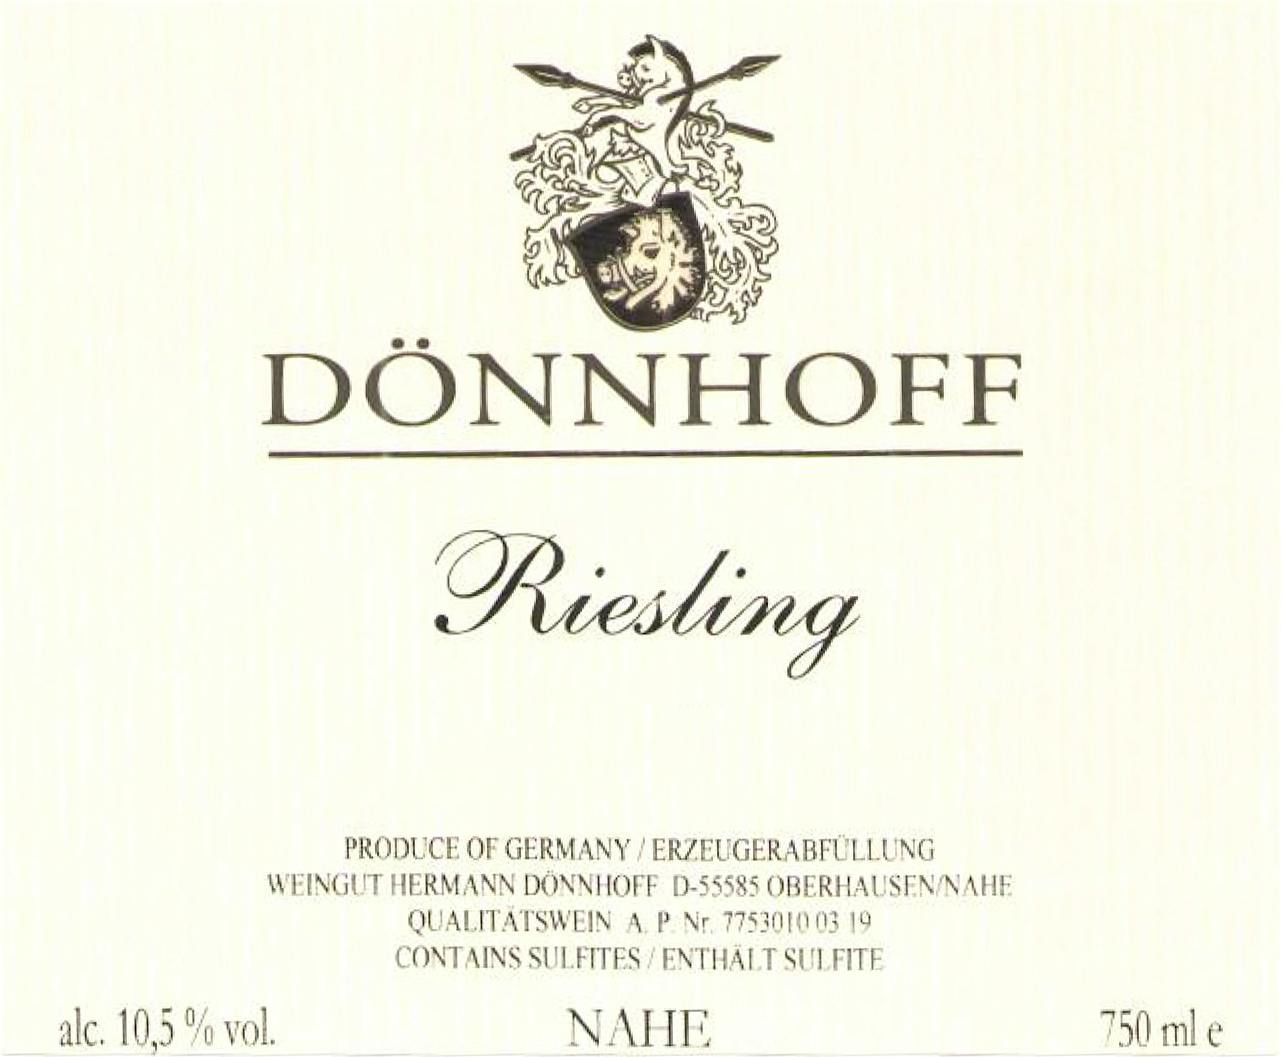 Label for H. Dönnhoff